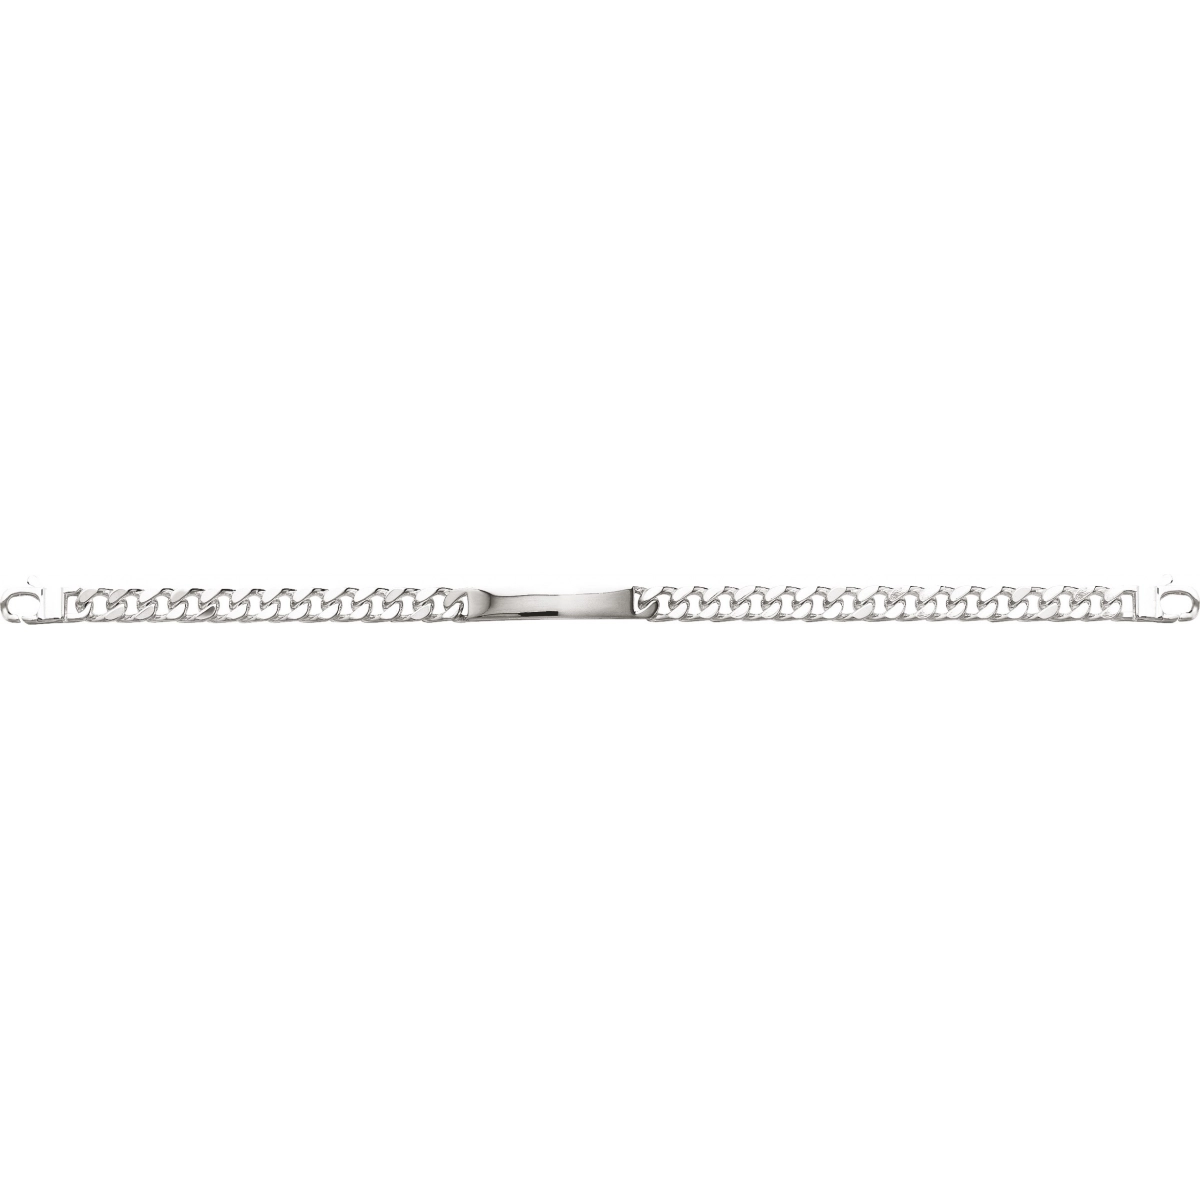 ID bracelet 6mm rh925 Silver - Size: 18  Lua Blanca  304001.00.18